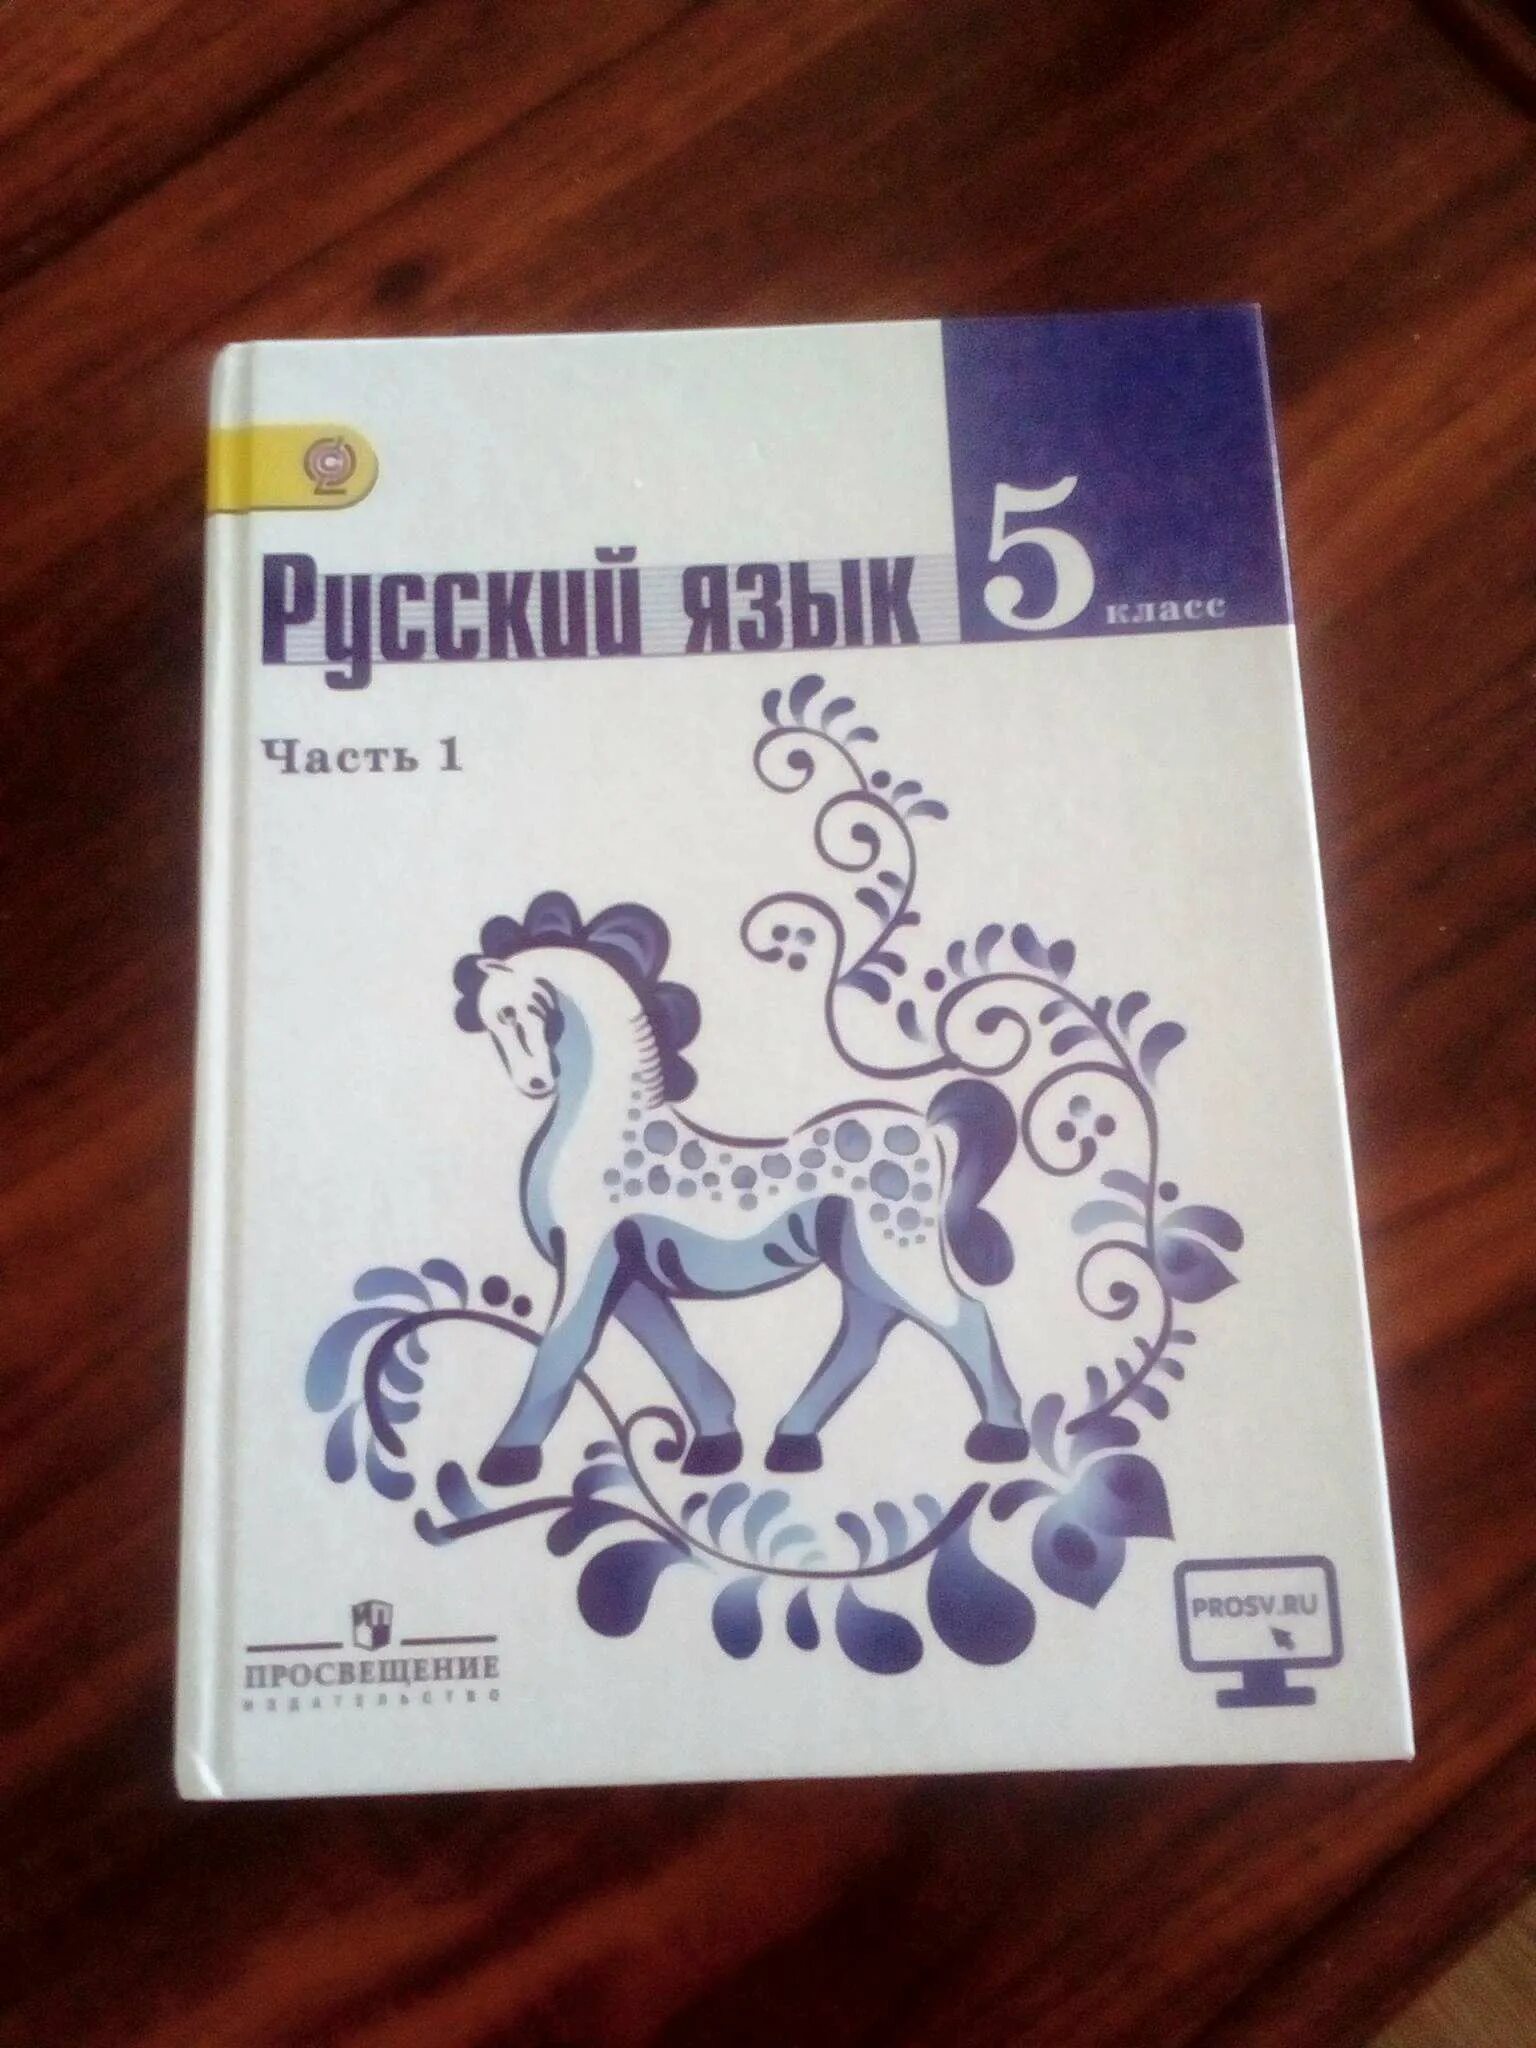 Русский язык 5 класс учебник. Книга русский язык 5 класс. Русский язык 5 класс 1 часть. Книга русский язык 5 класс учебник.